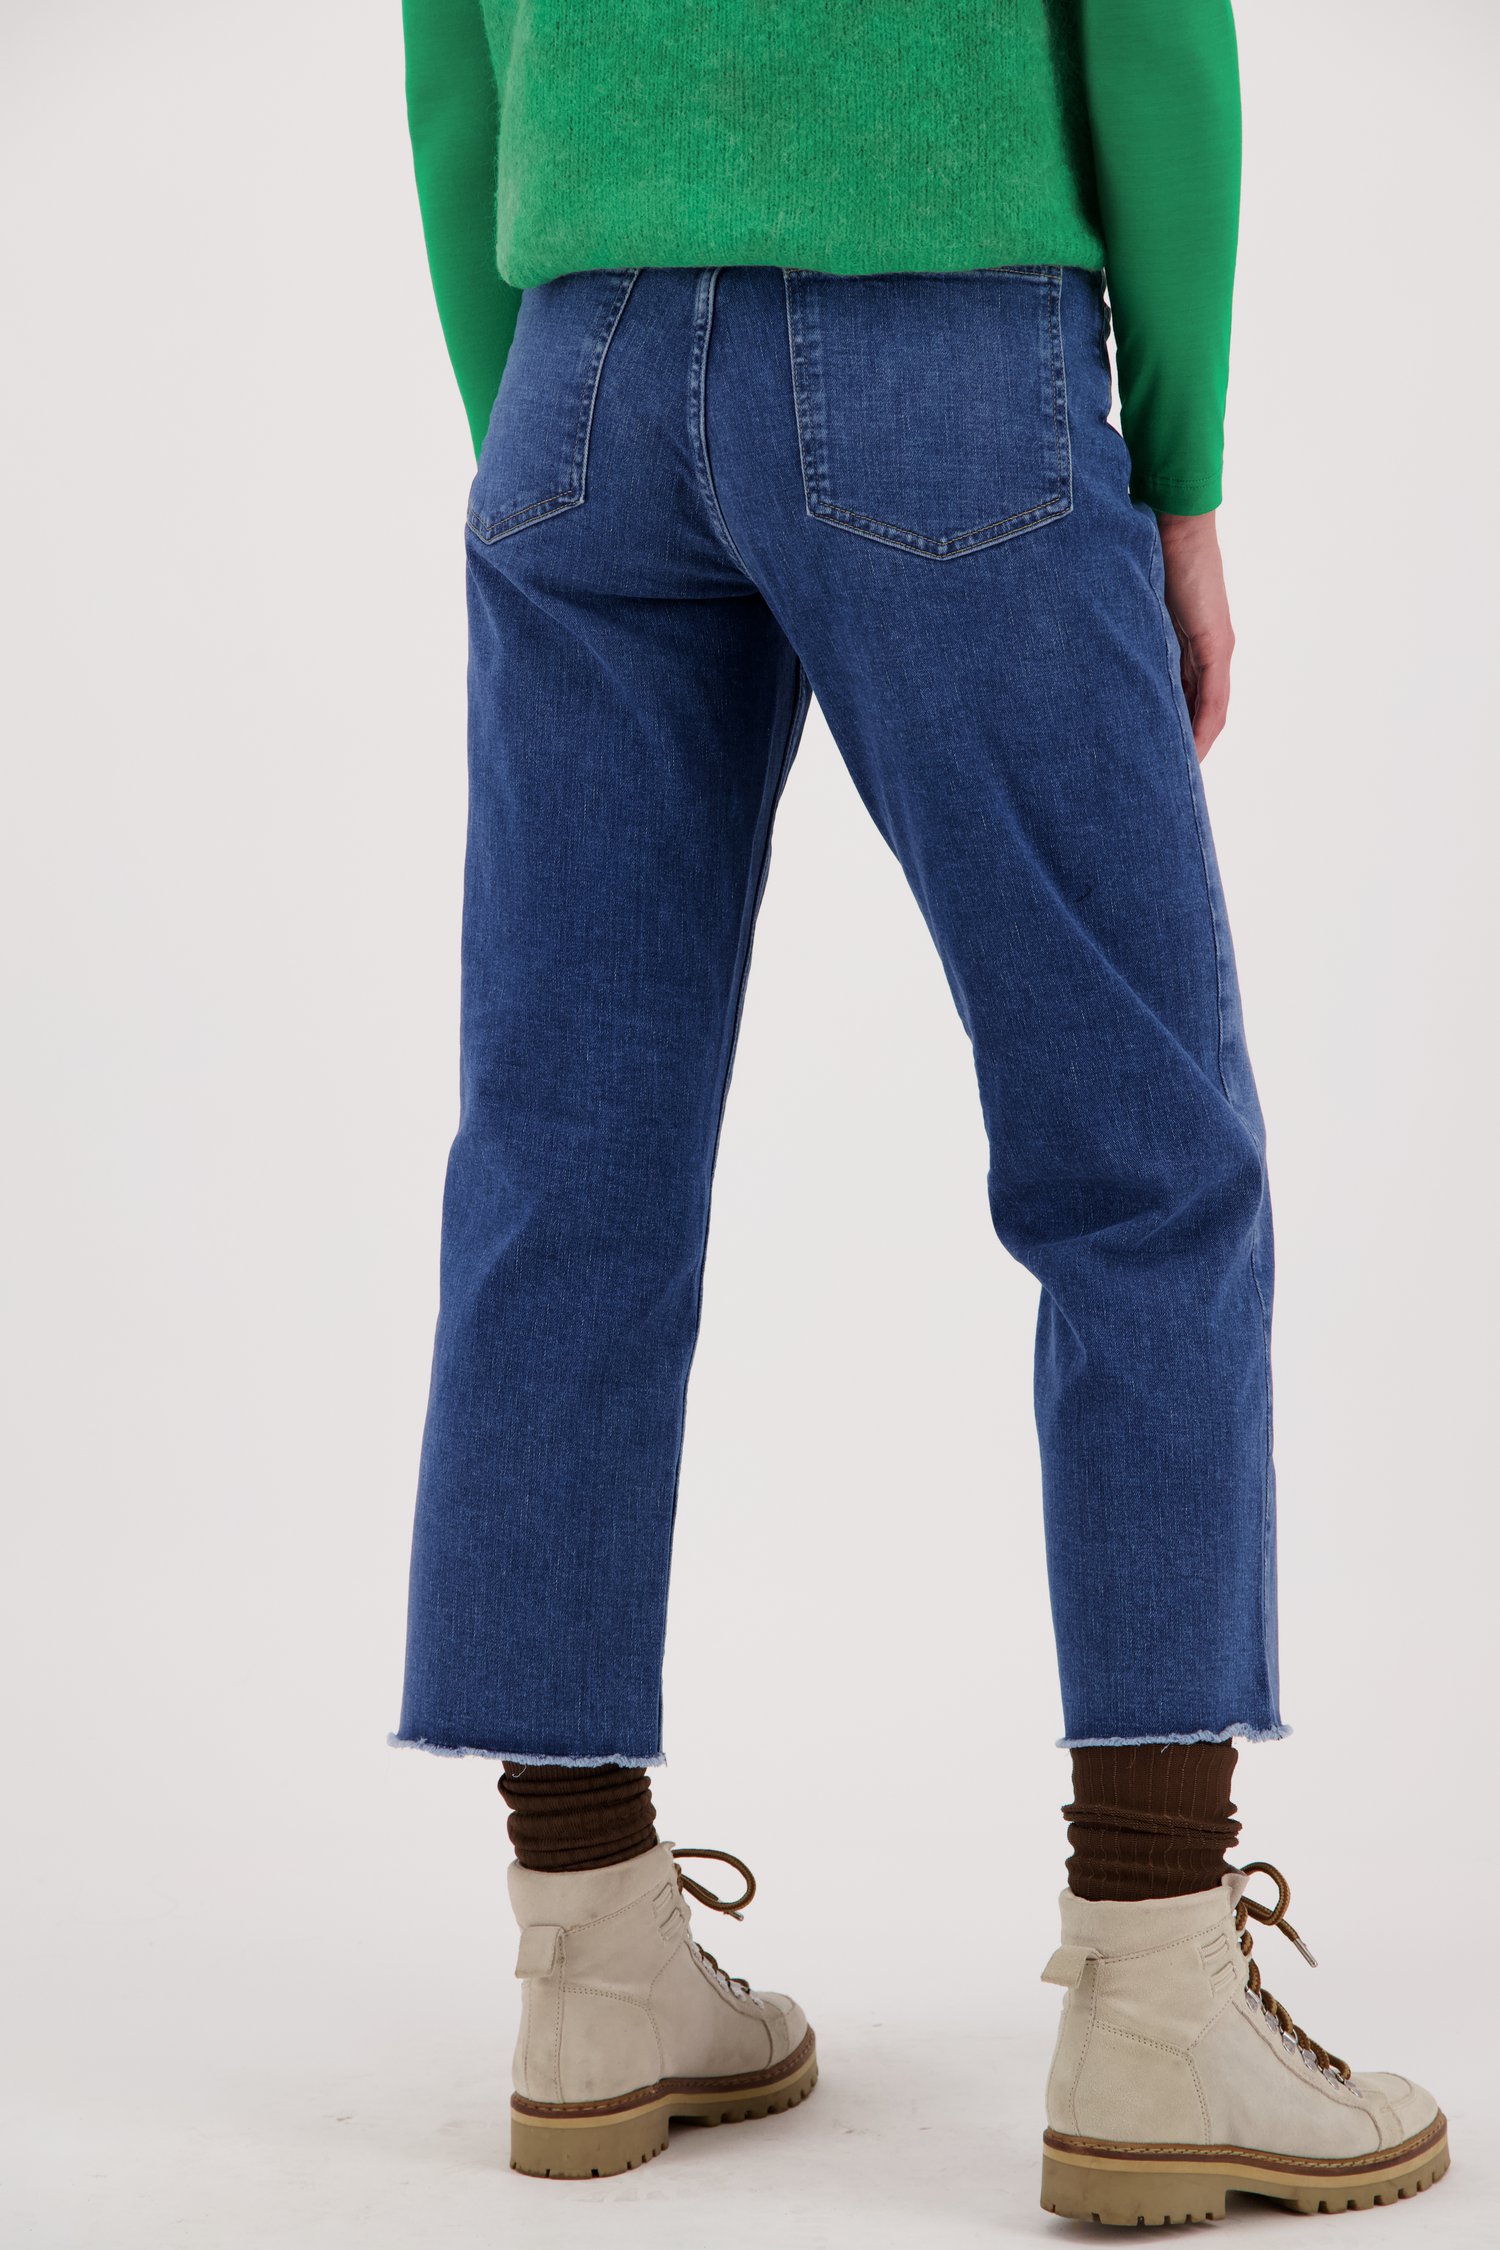 Blauwe jeans - straight fit van Opus voor Dames